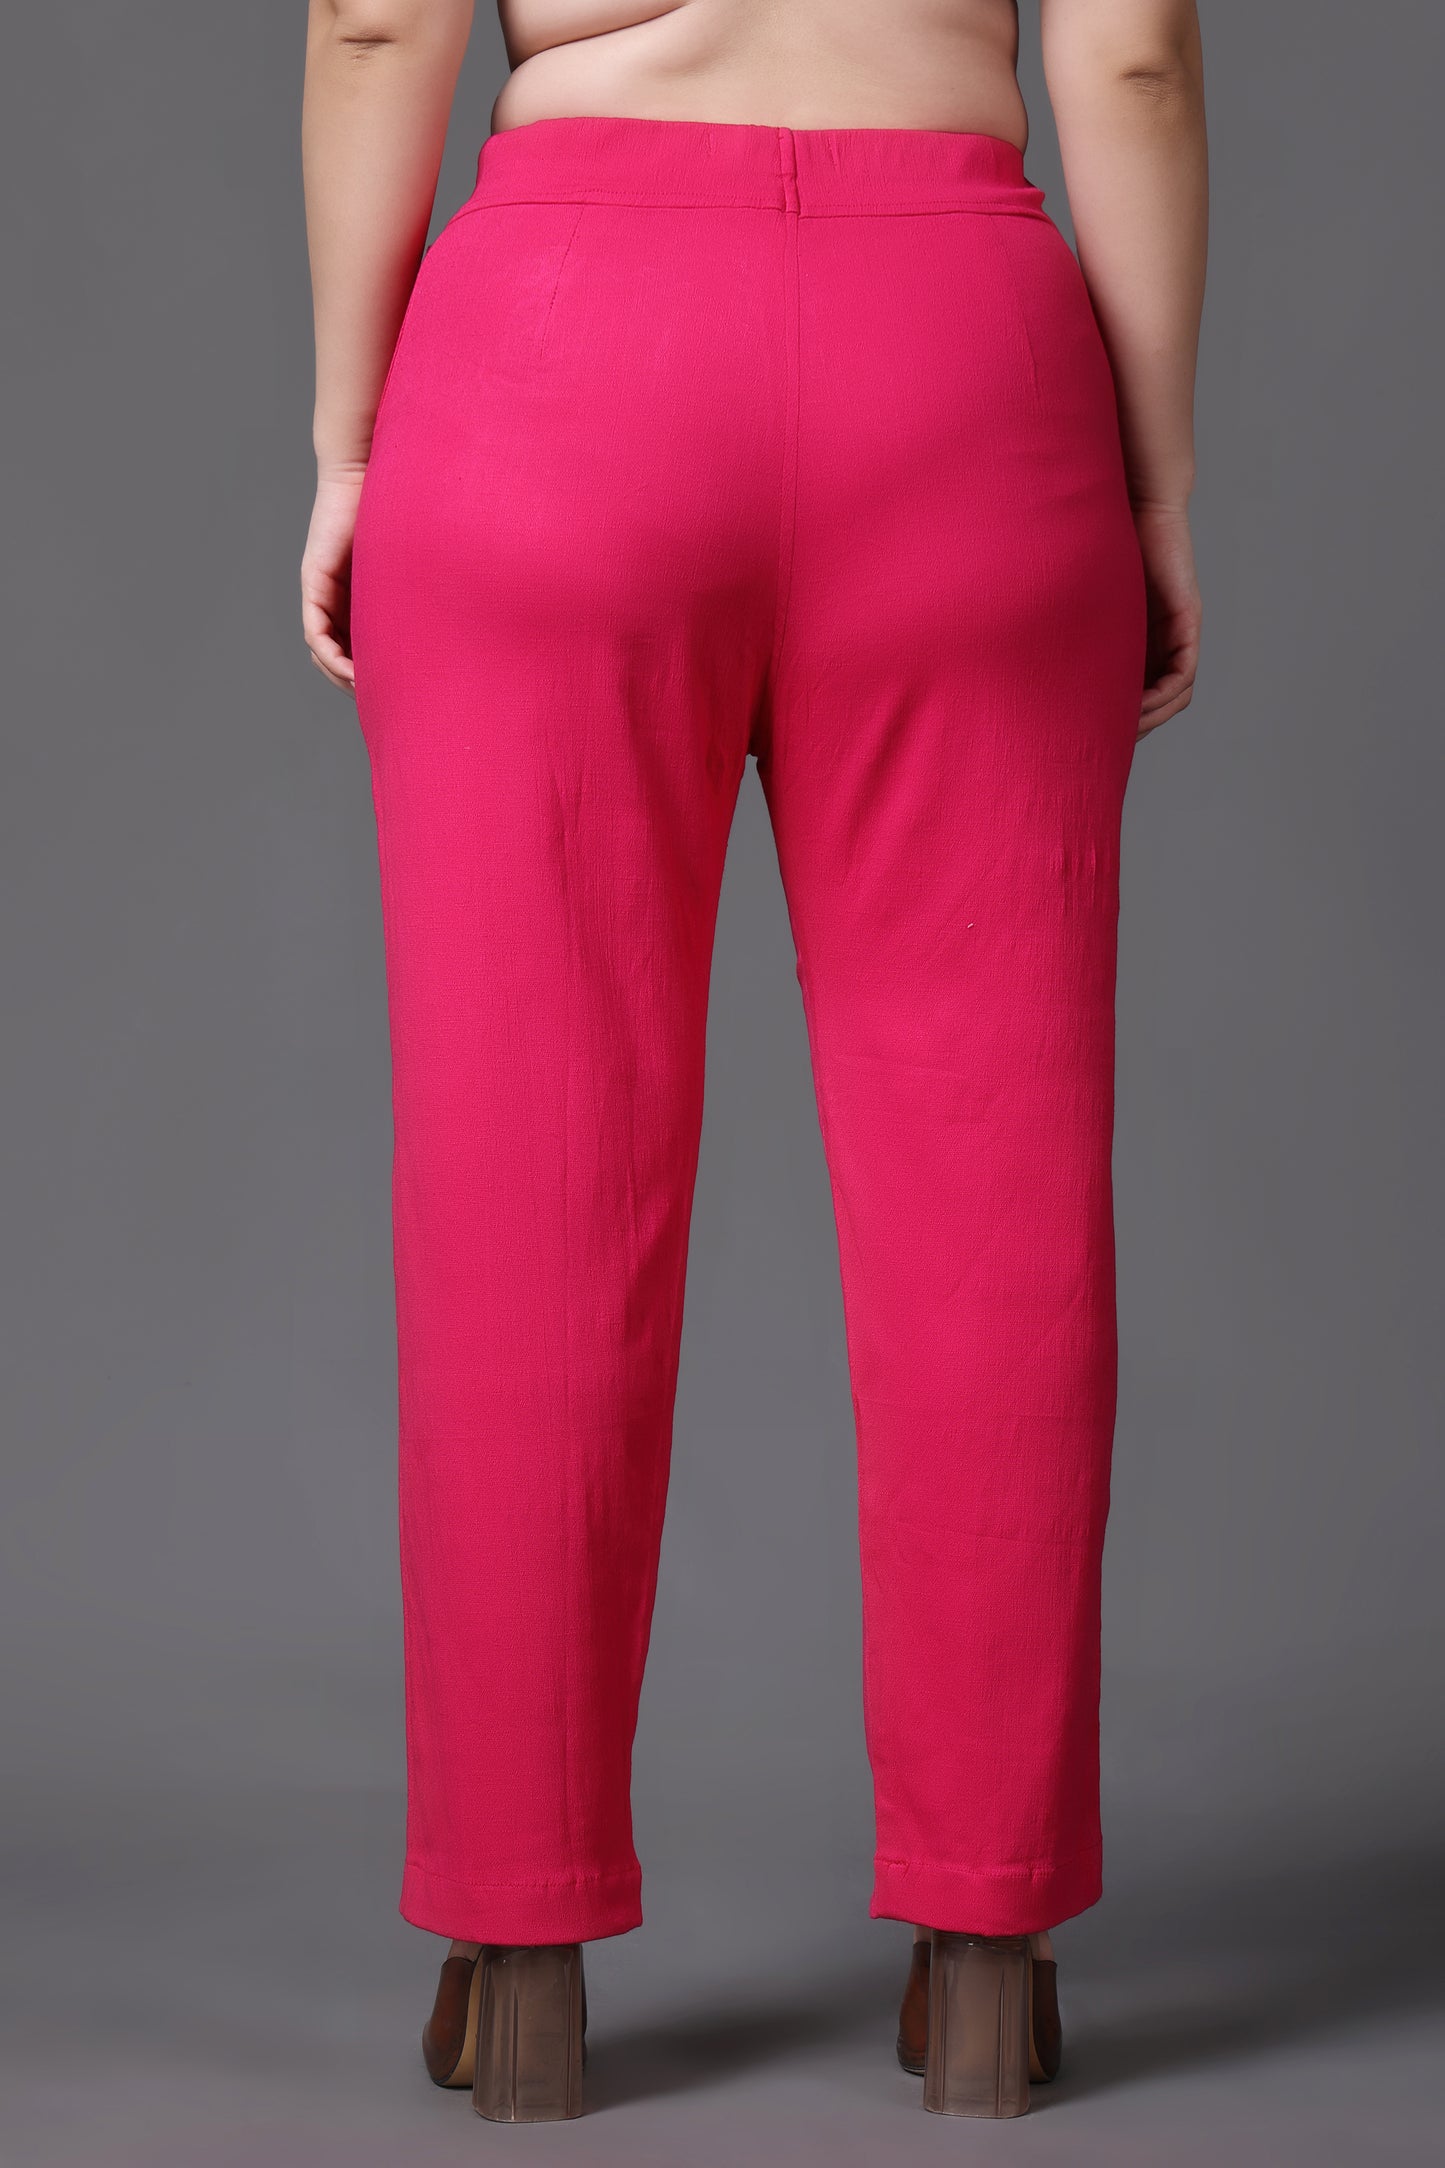  Pink Lycra Formal Pants